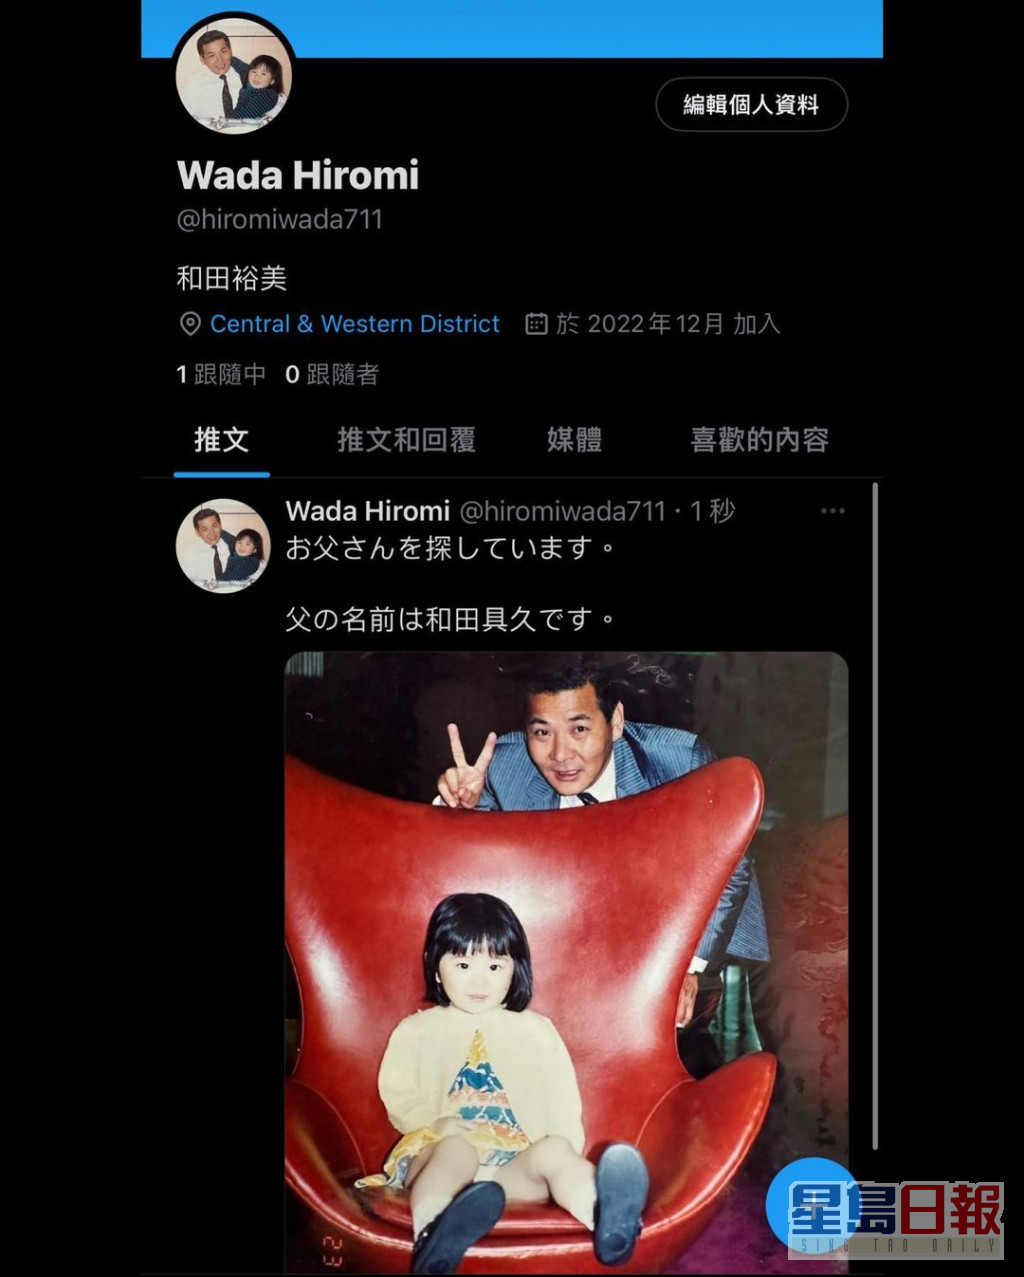 裕美立刻开twitter账号联络，同时以日文贴出与父亲的童年合照。